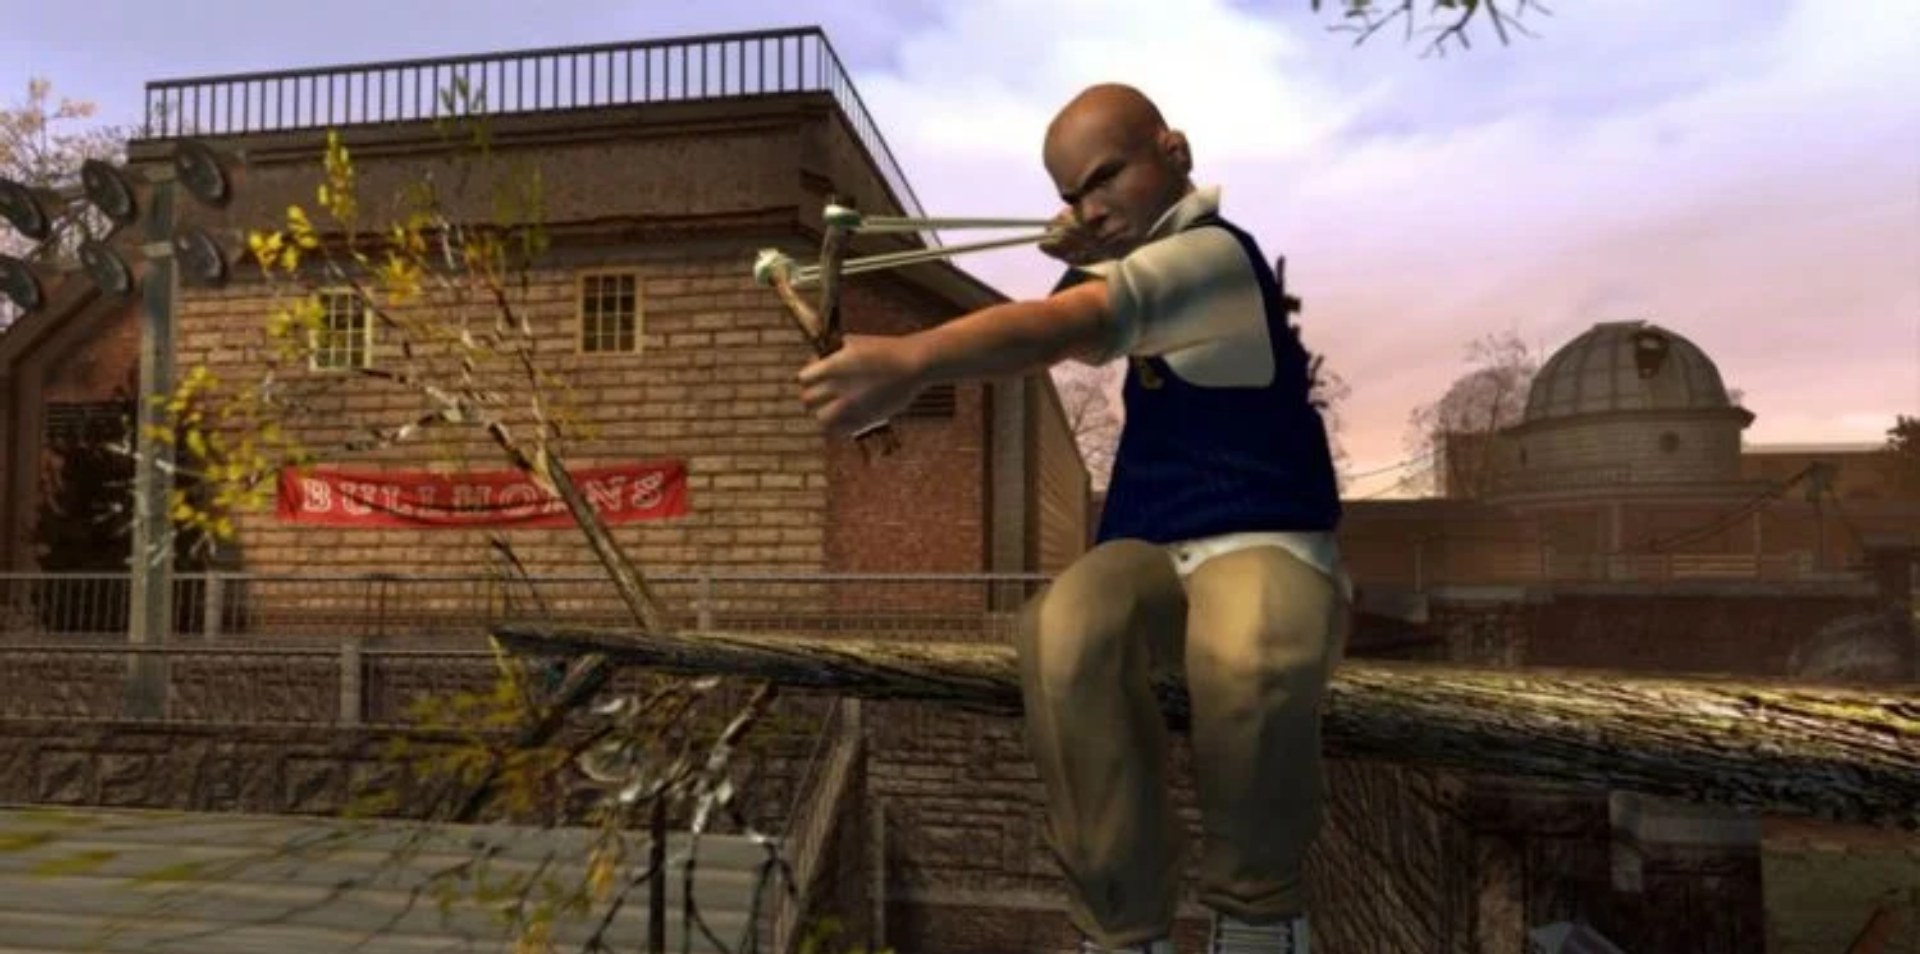 بازی Bully 2 در سال 2009 لغو شده است